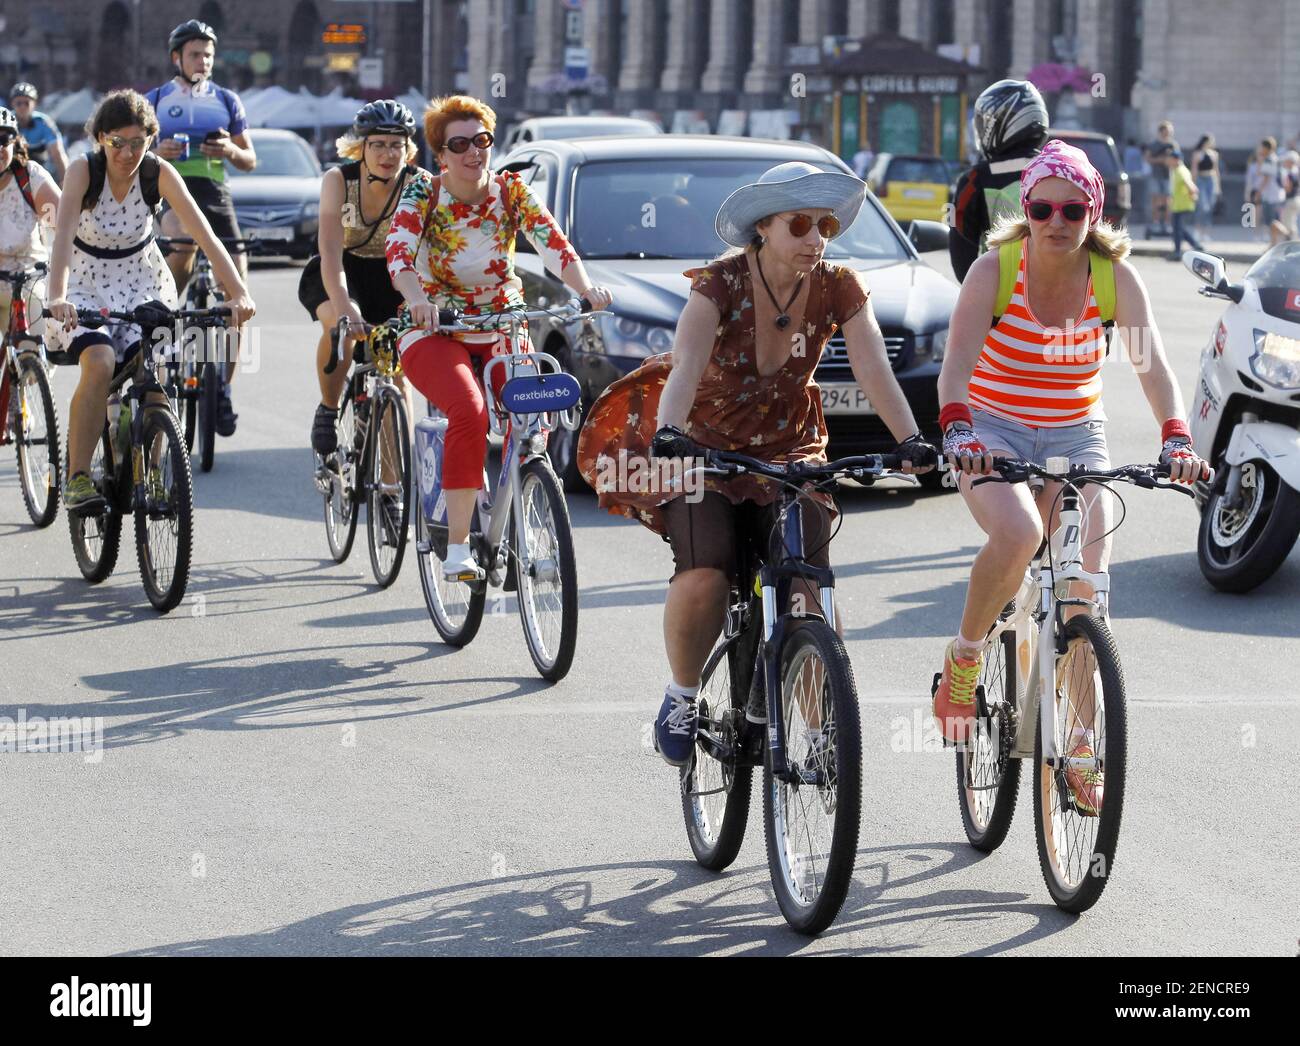 predicción Plano dictador Las mujeres ucranianas y niñas vestían ropas diferentes asistir al ciclo de  Kyiv Chic 2019 mujeres desfile de bicicletas, en el centro de Kiev,  Ucrania.Las mujeres se reúnen con sus bicicletas junto